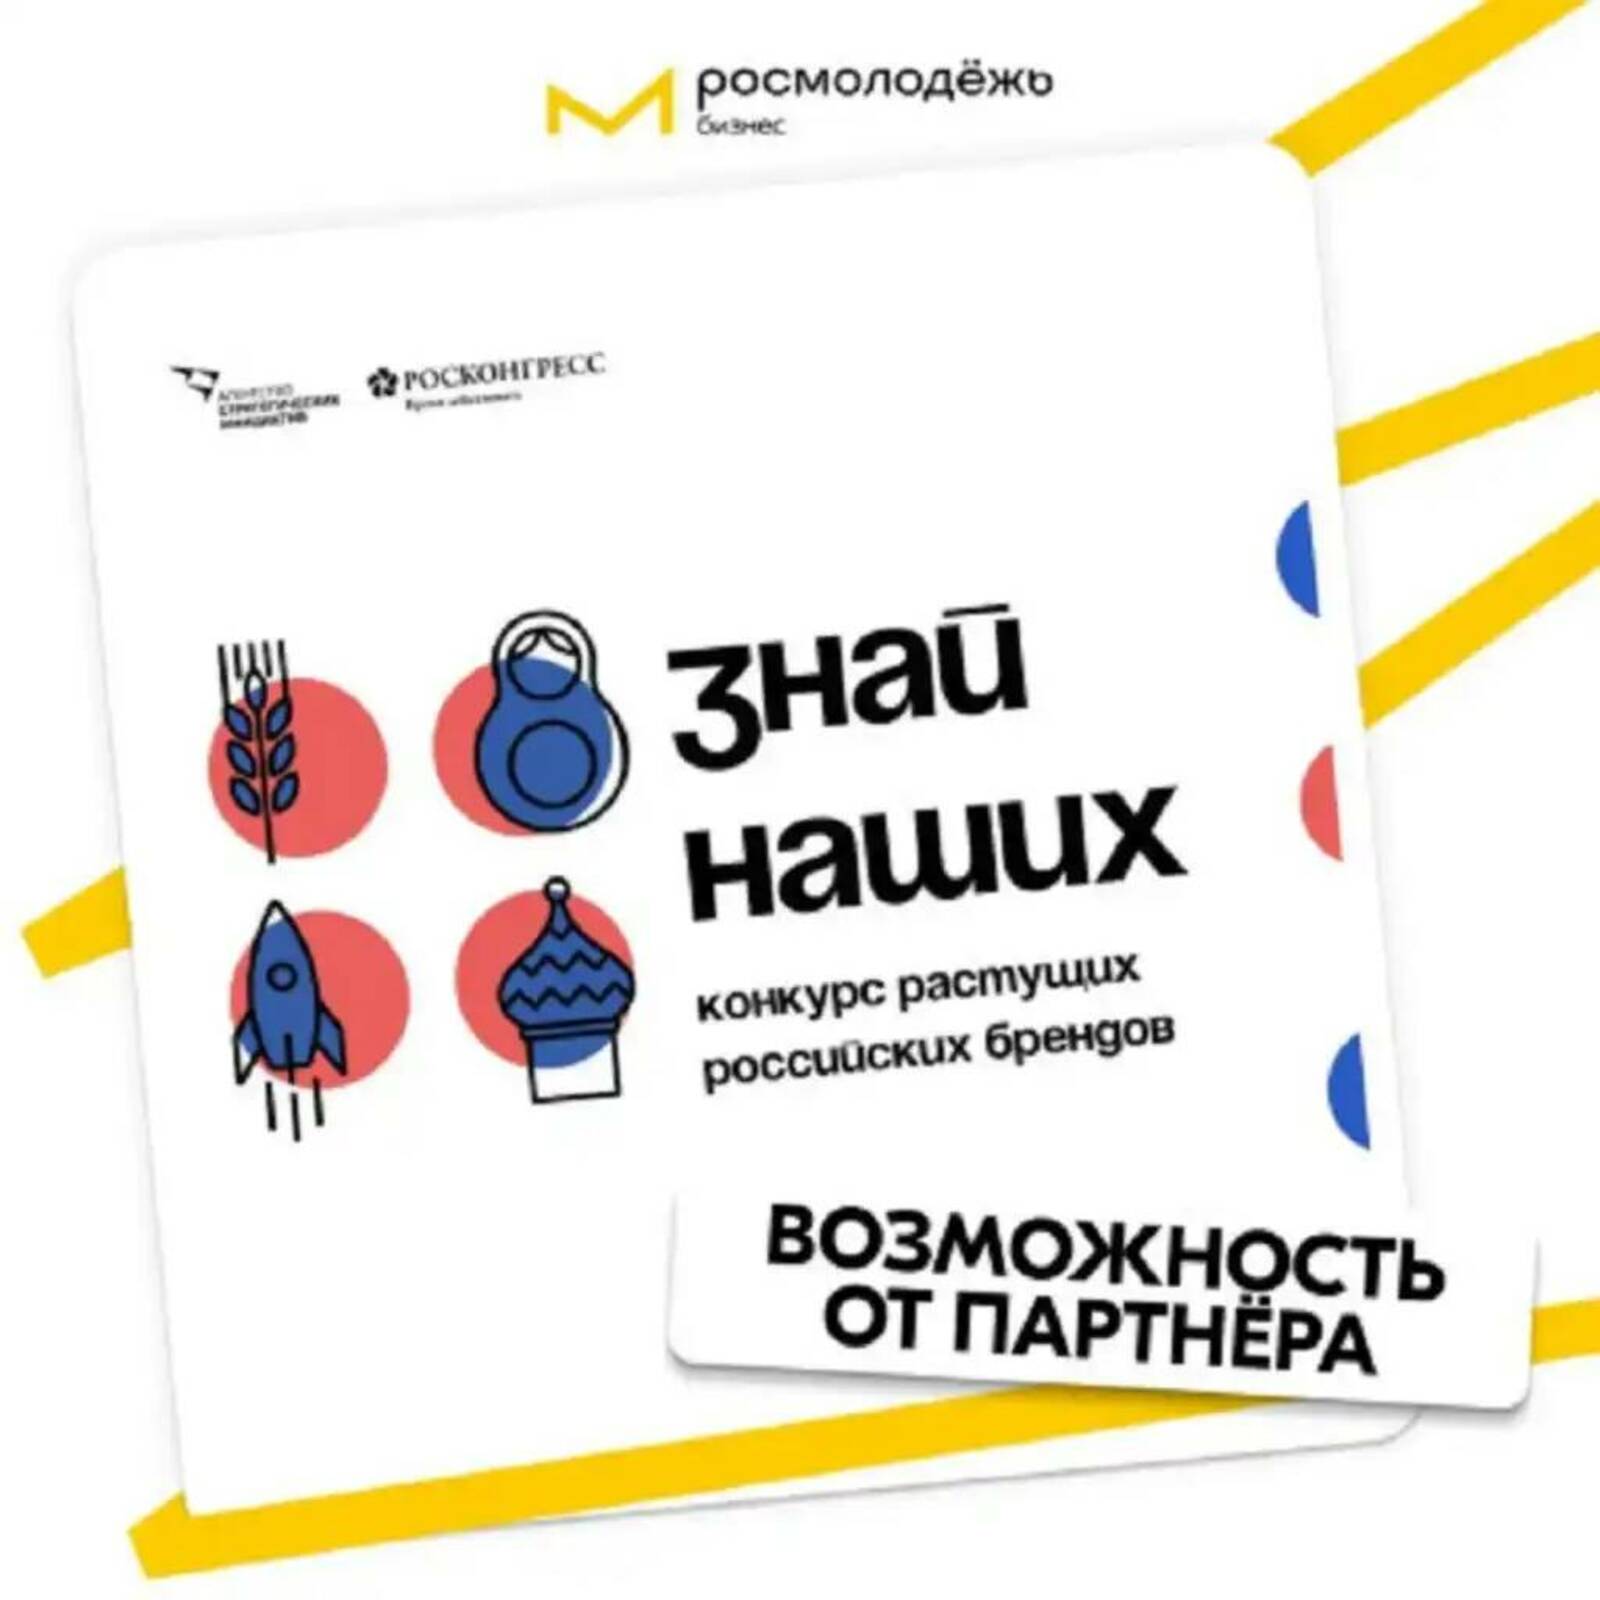 Предприниматели Башкортостана смогут принять участие в конкурсе российских брендов «Знай наших